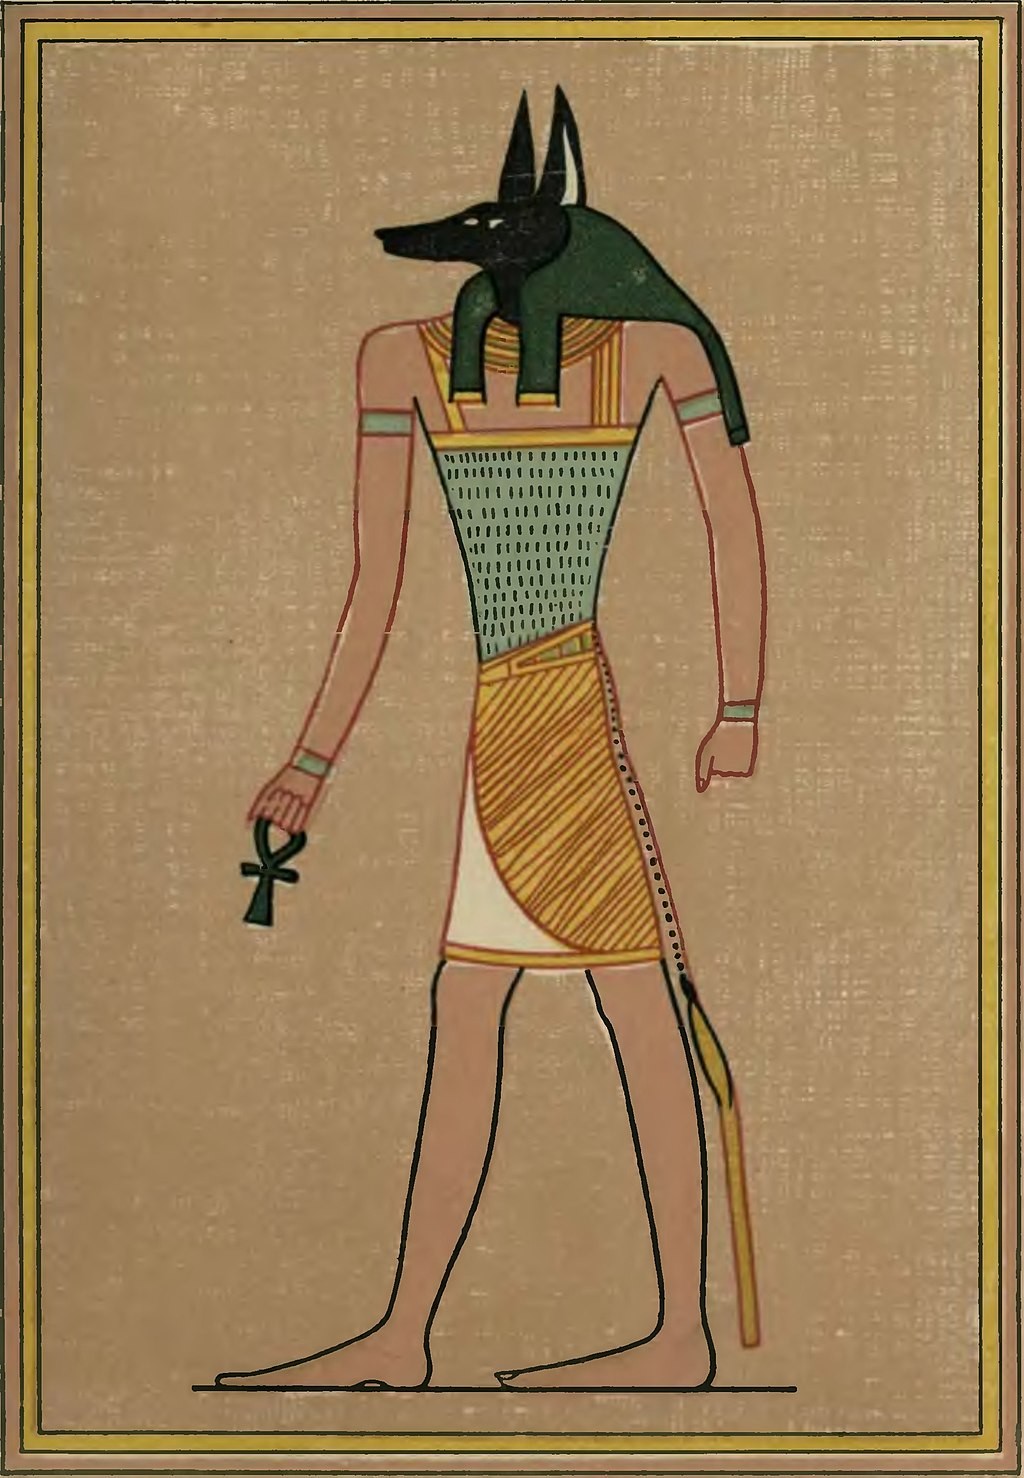 Os antigos egípcios adoravam o deus Anúbis, que tinha cabeça de chacal (Foto: Wikimedia Commons/ CreativeCommons)